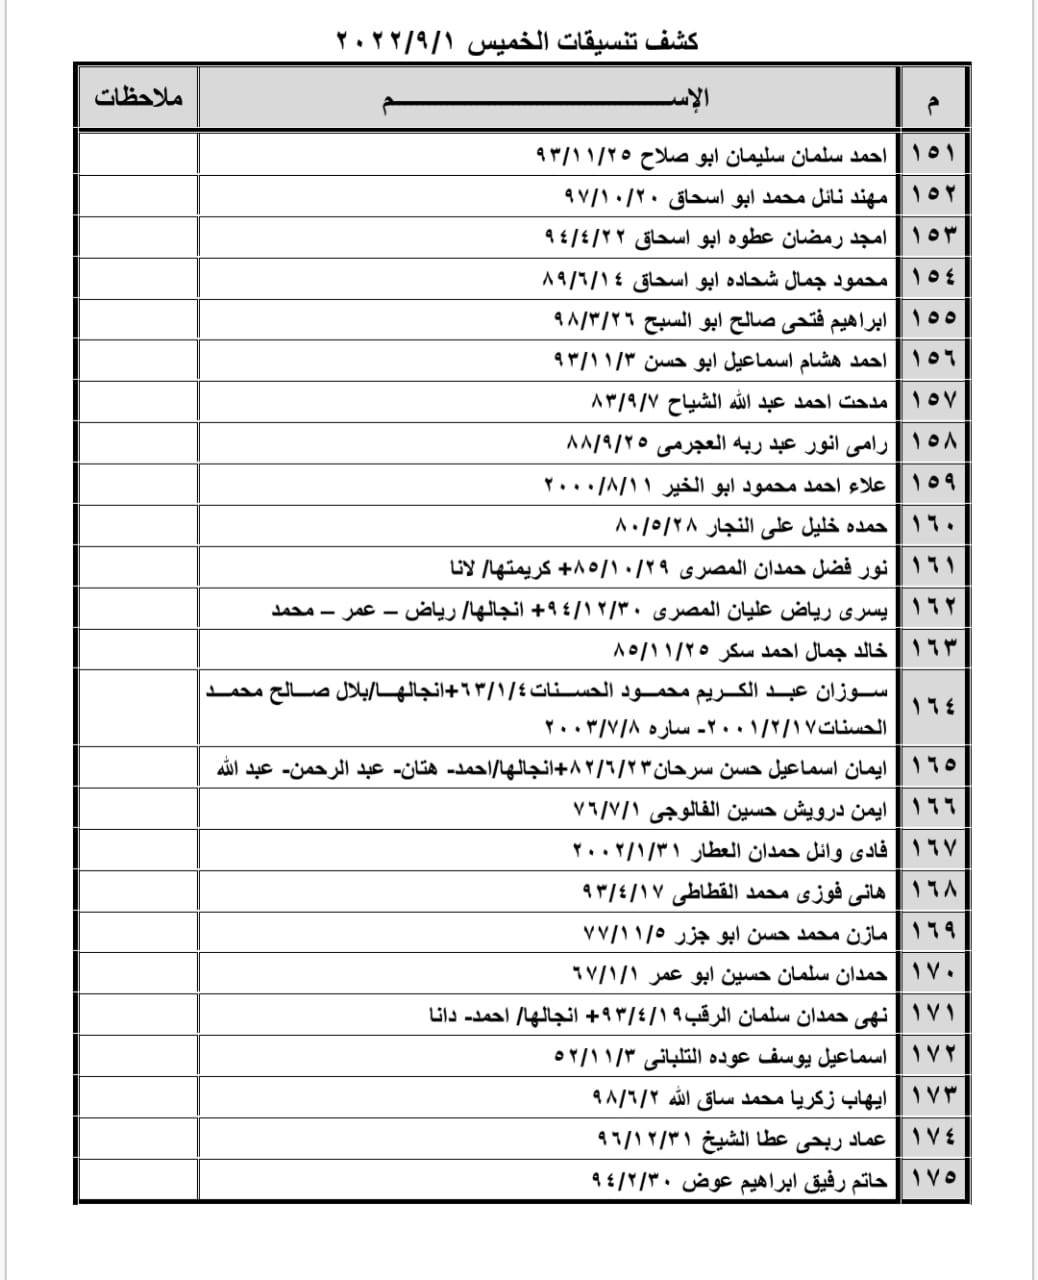 بالأسماء: كشف "تنسيقات مصرية" للسفر عبر معبر رفح يوم الخميس 1 سبتمبر 2022